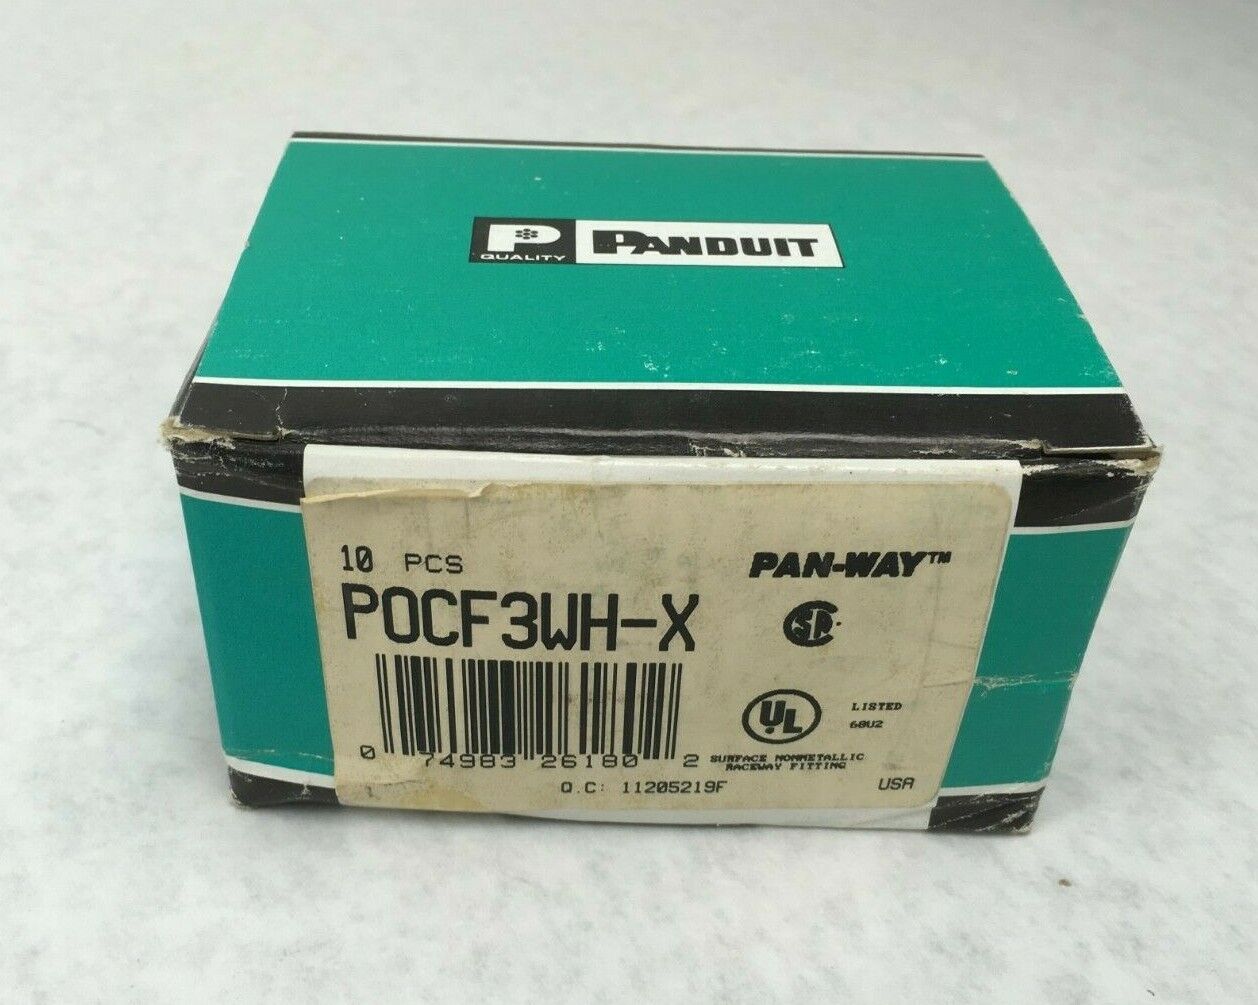 Panduit Pan-Way POCF6WH-X FIT PD6 Box of 10